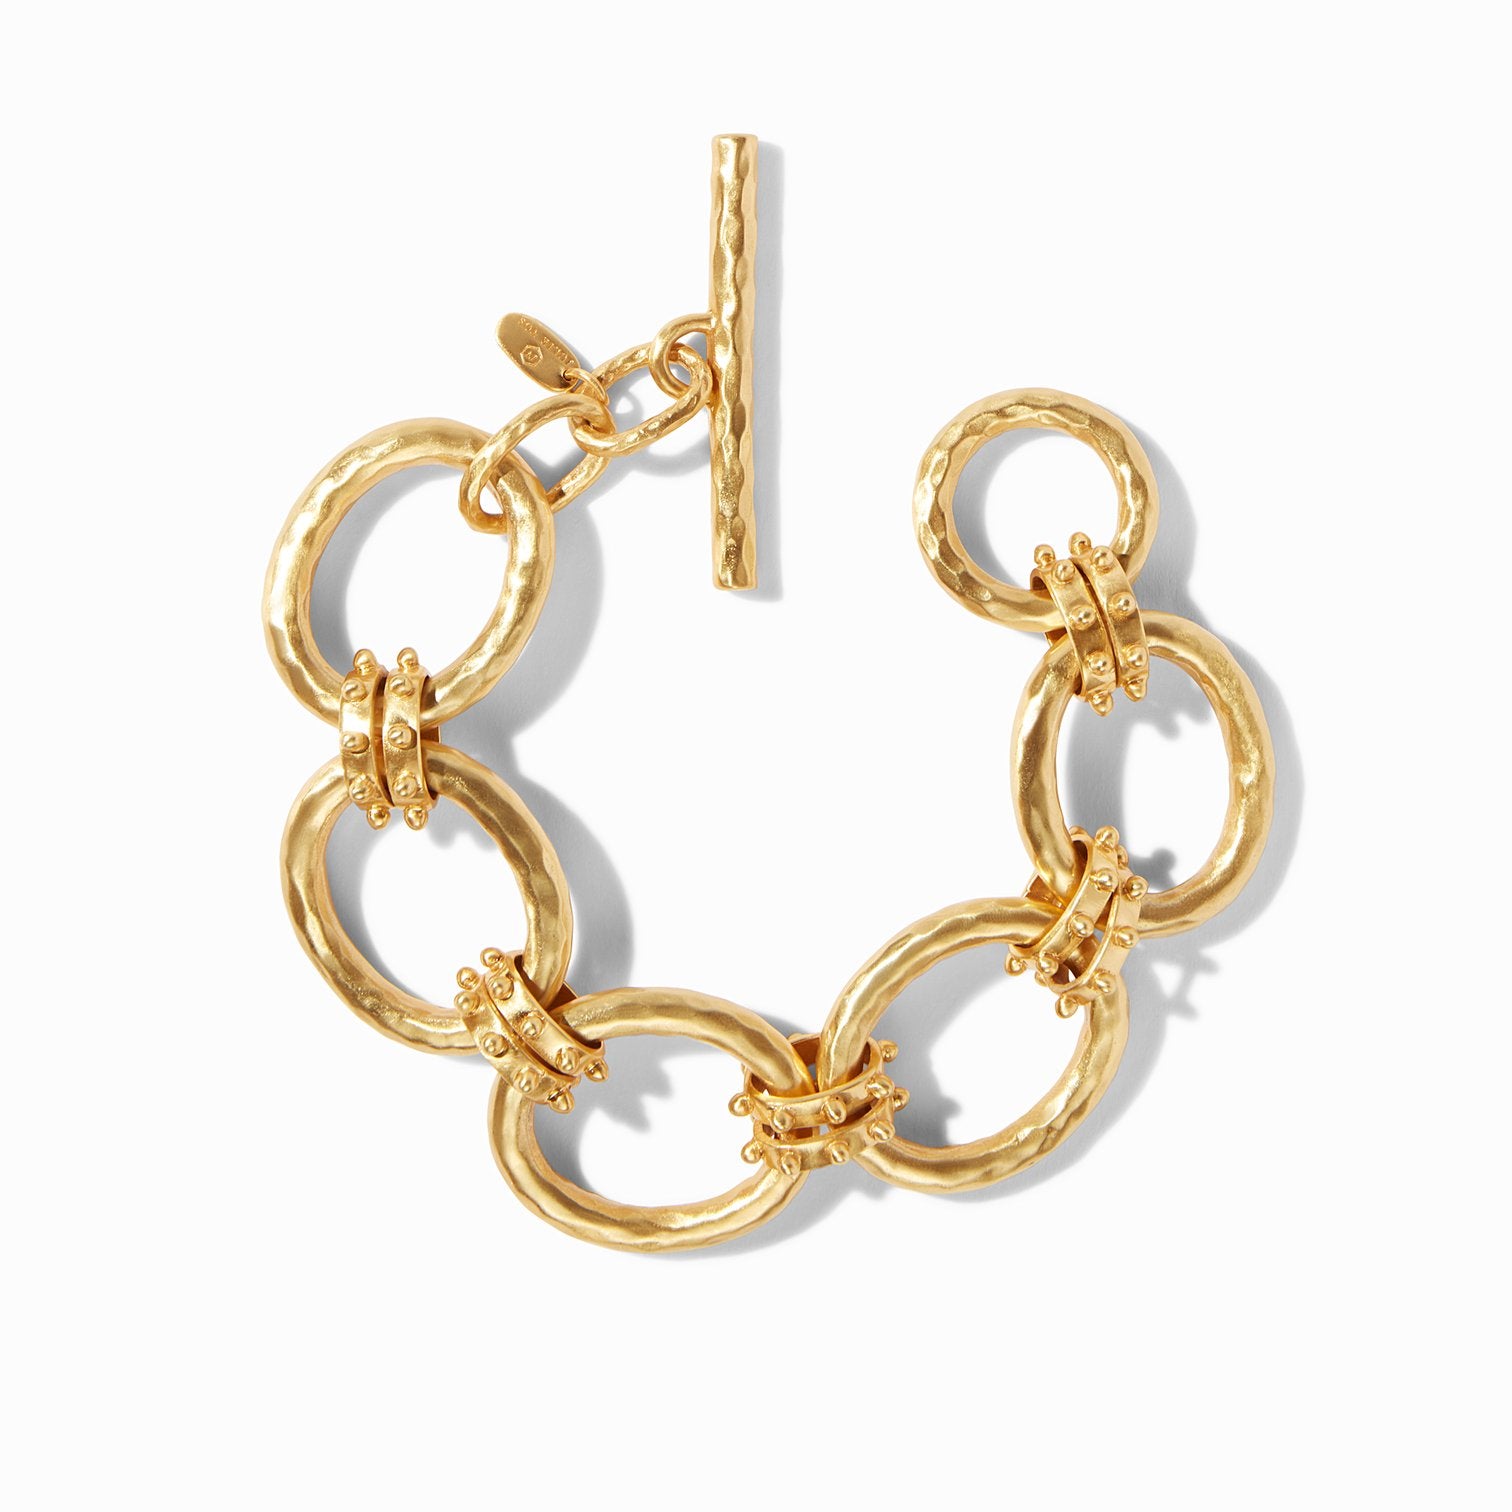 Soho Gold Link Bracelet- Julie Vos